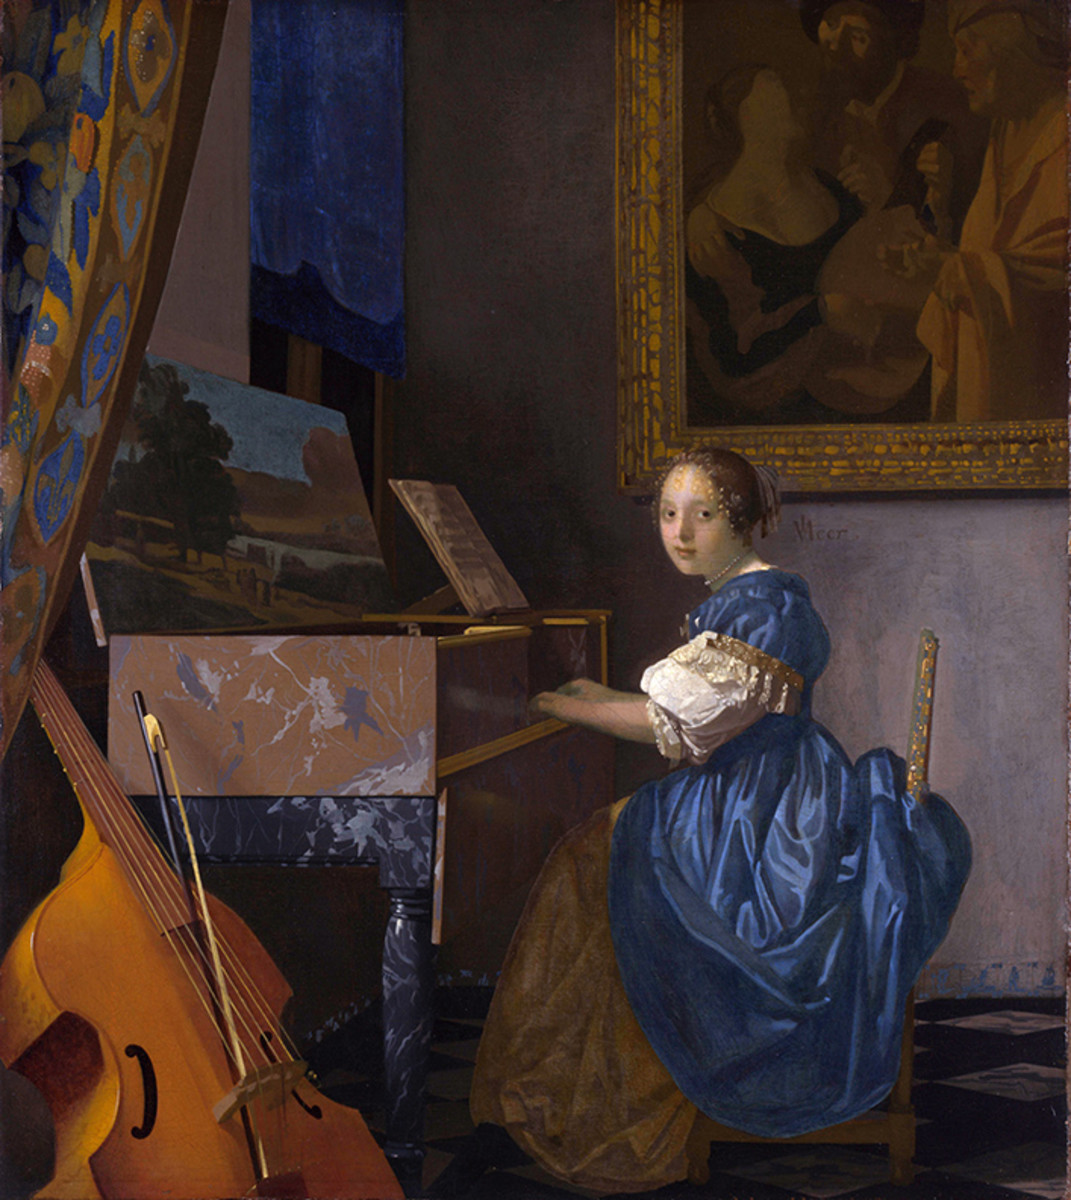 artists-who-died-before-50-jan-vermeer